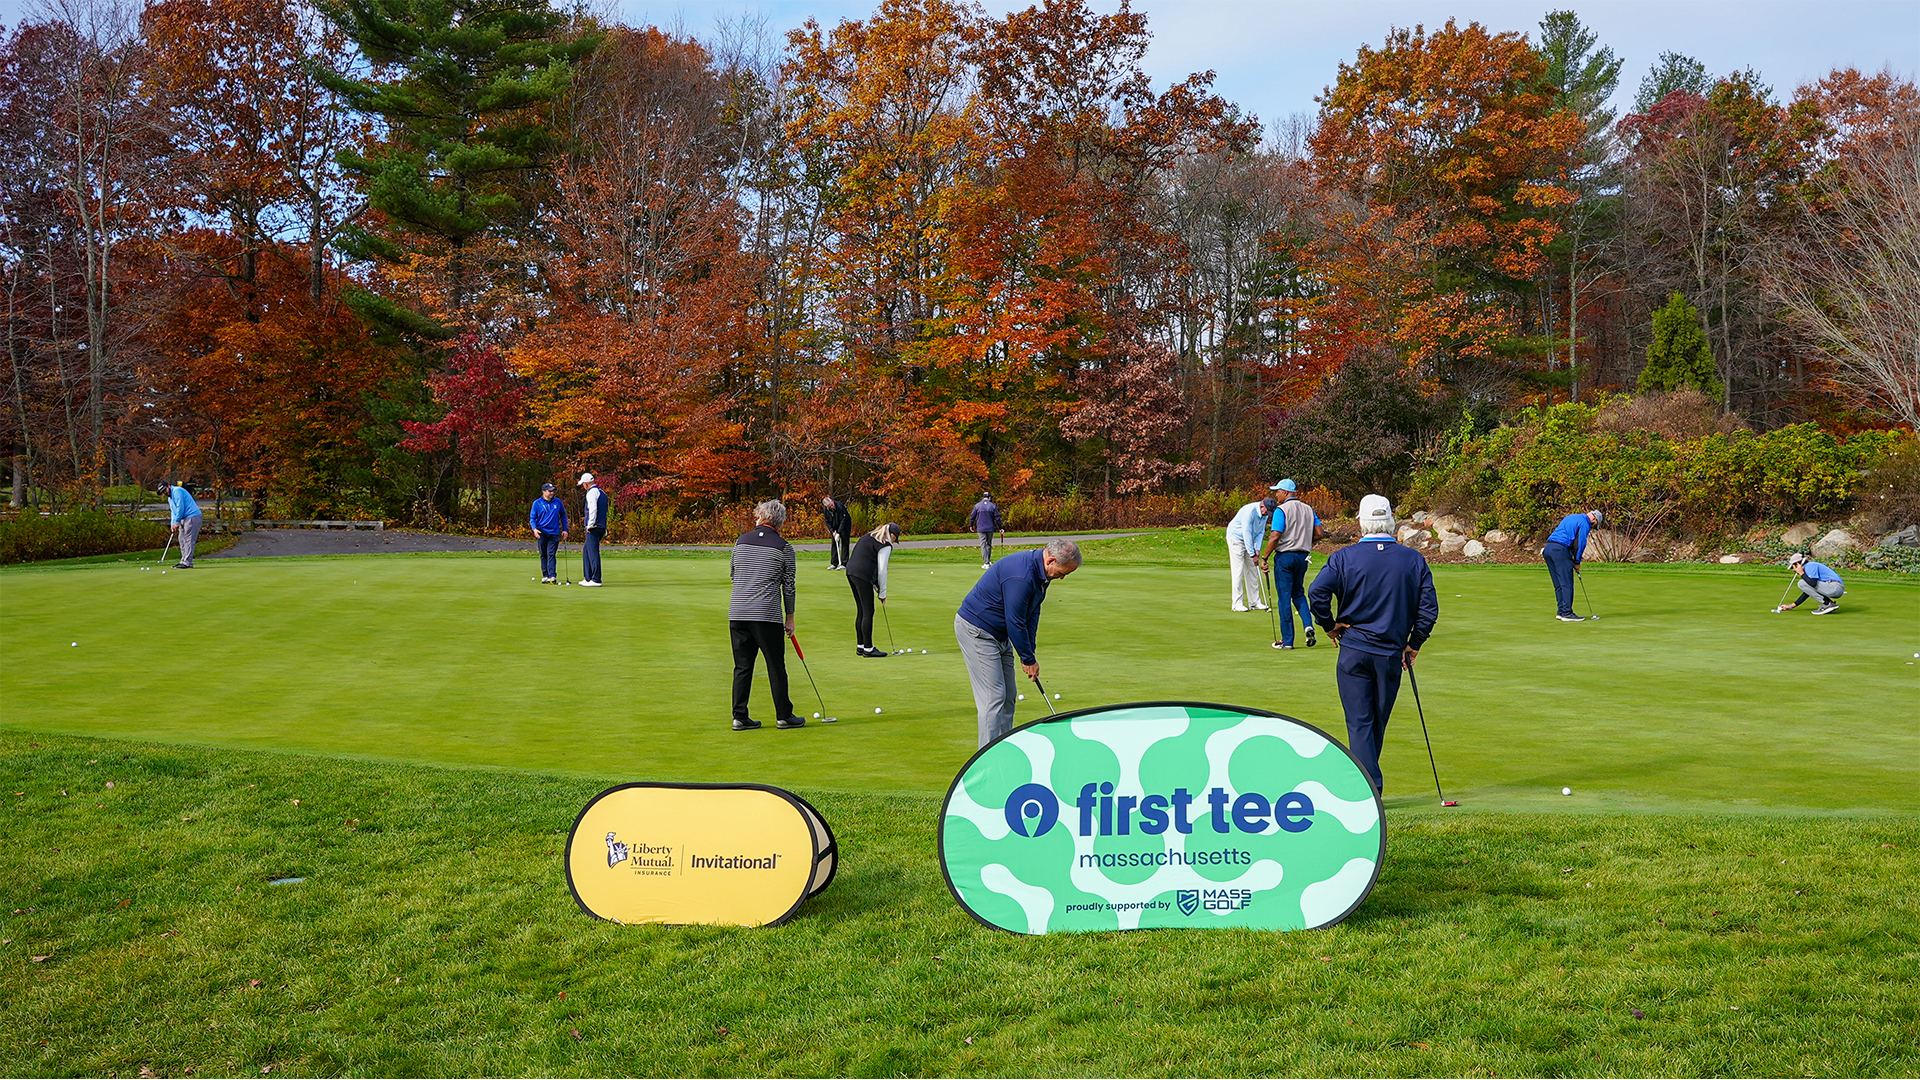 First Tee — Massachusetts Hosts Another Successful Fundraiser Golf Tournament